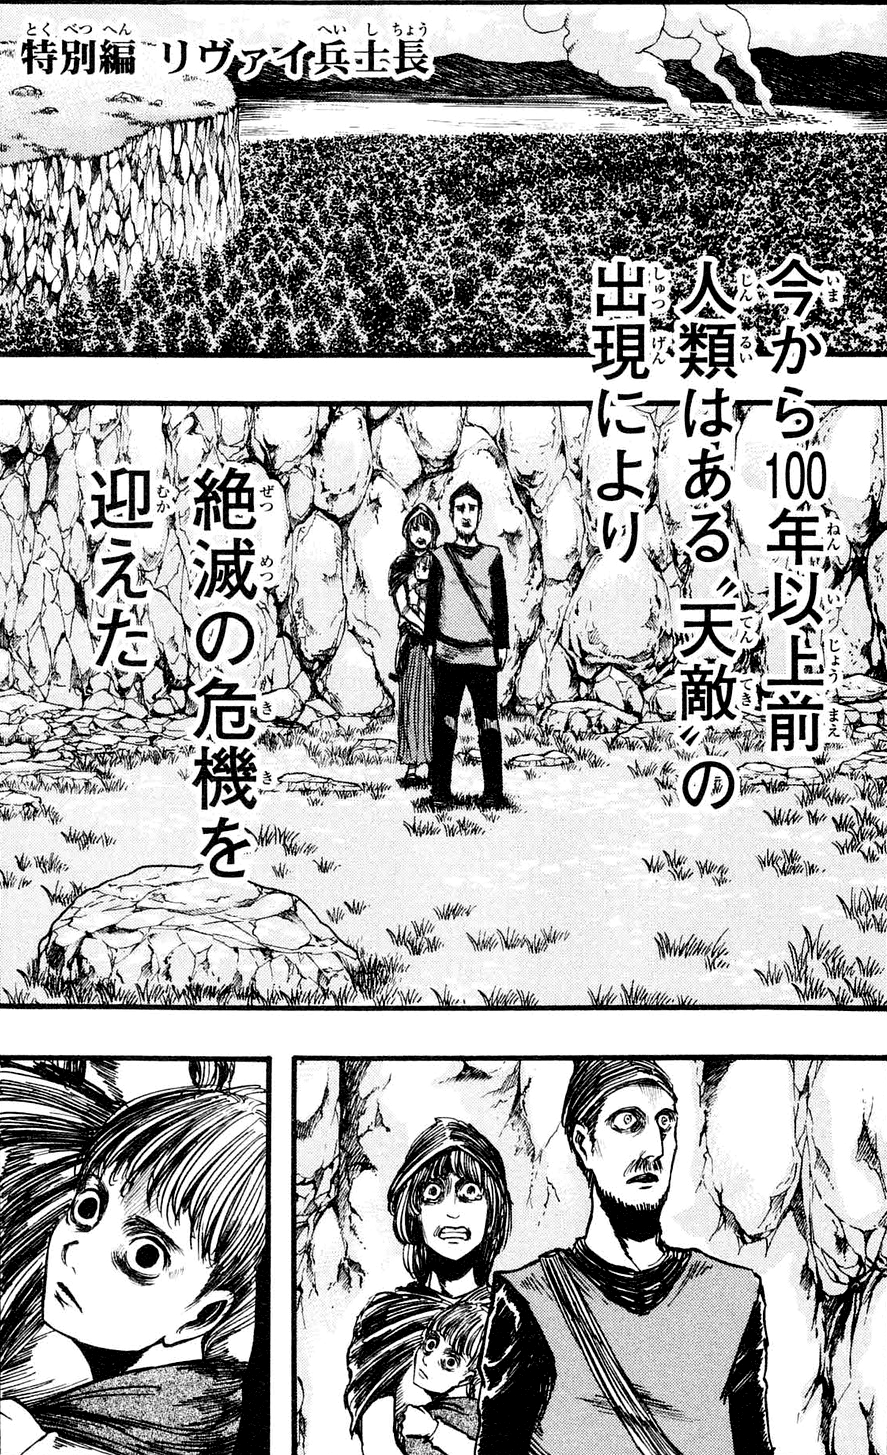 Calaméo - Manga de Shingeki no kyojin cap 1